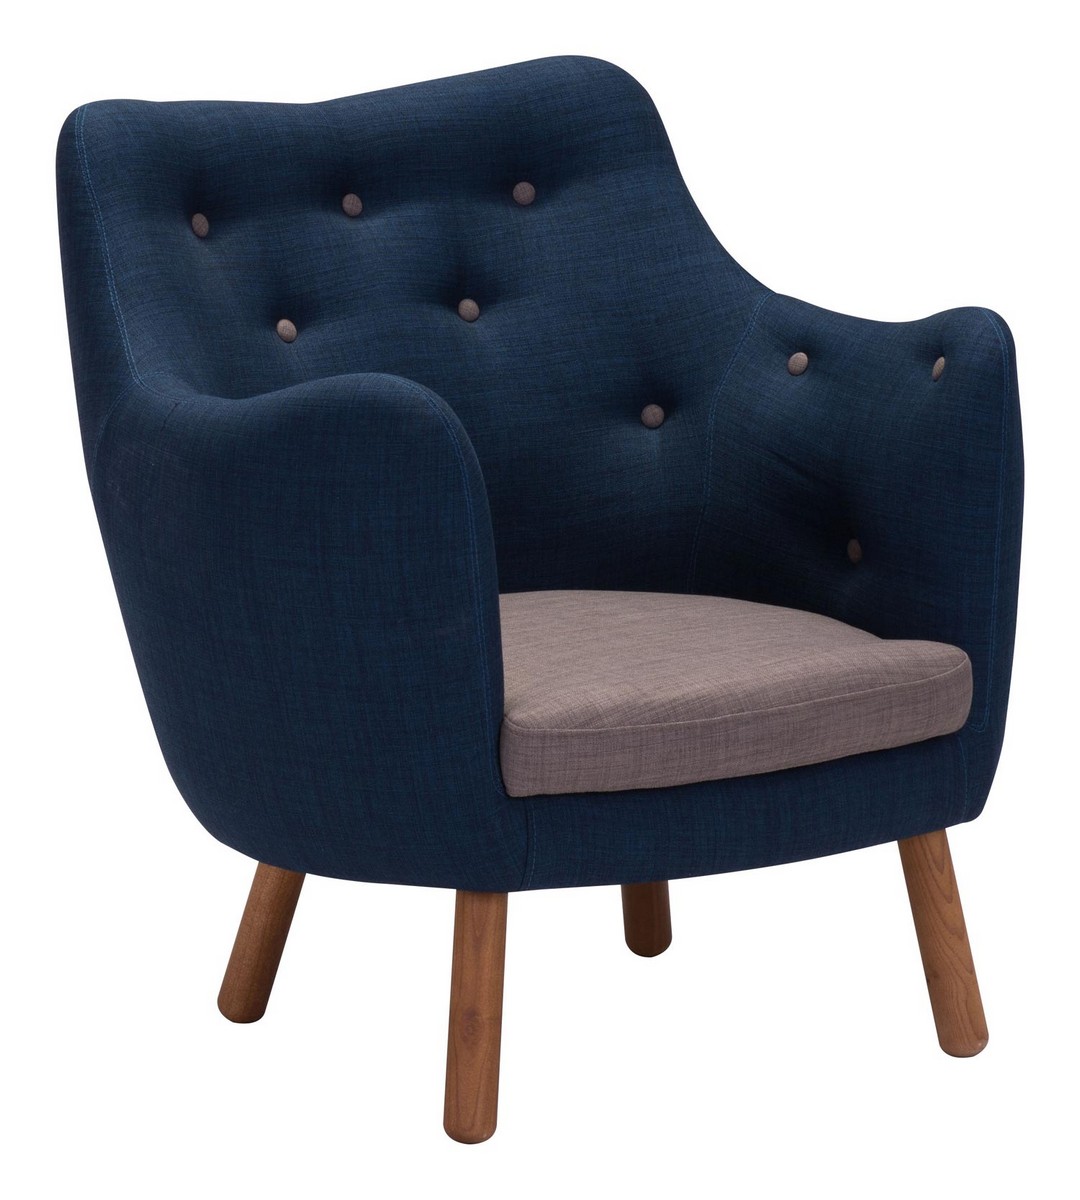 Zuo Modern Liege Chair - Cobalt Blue